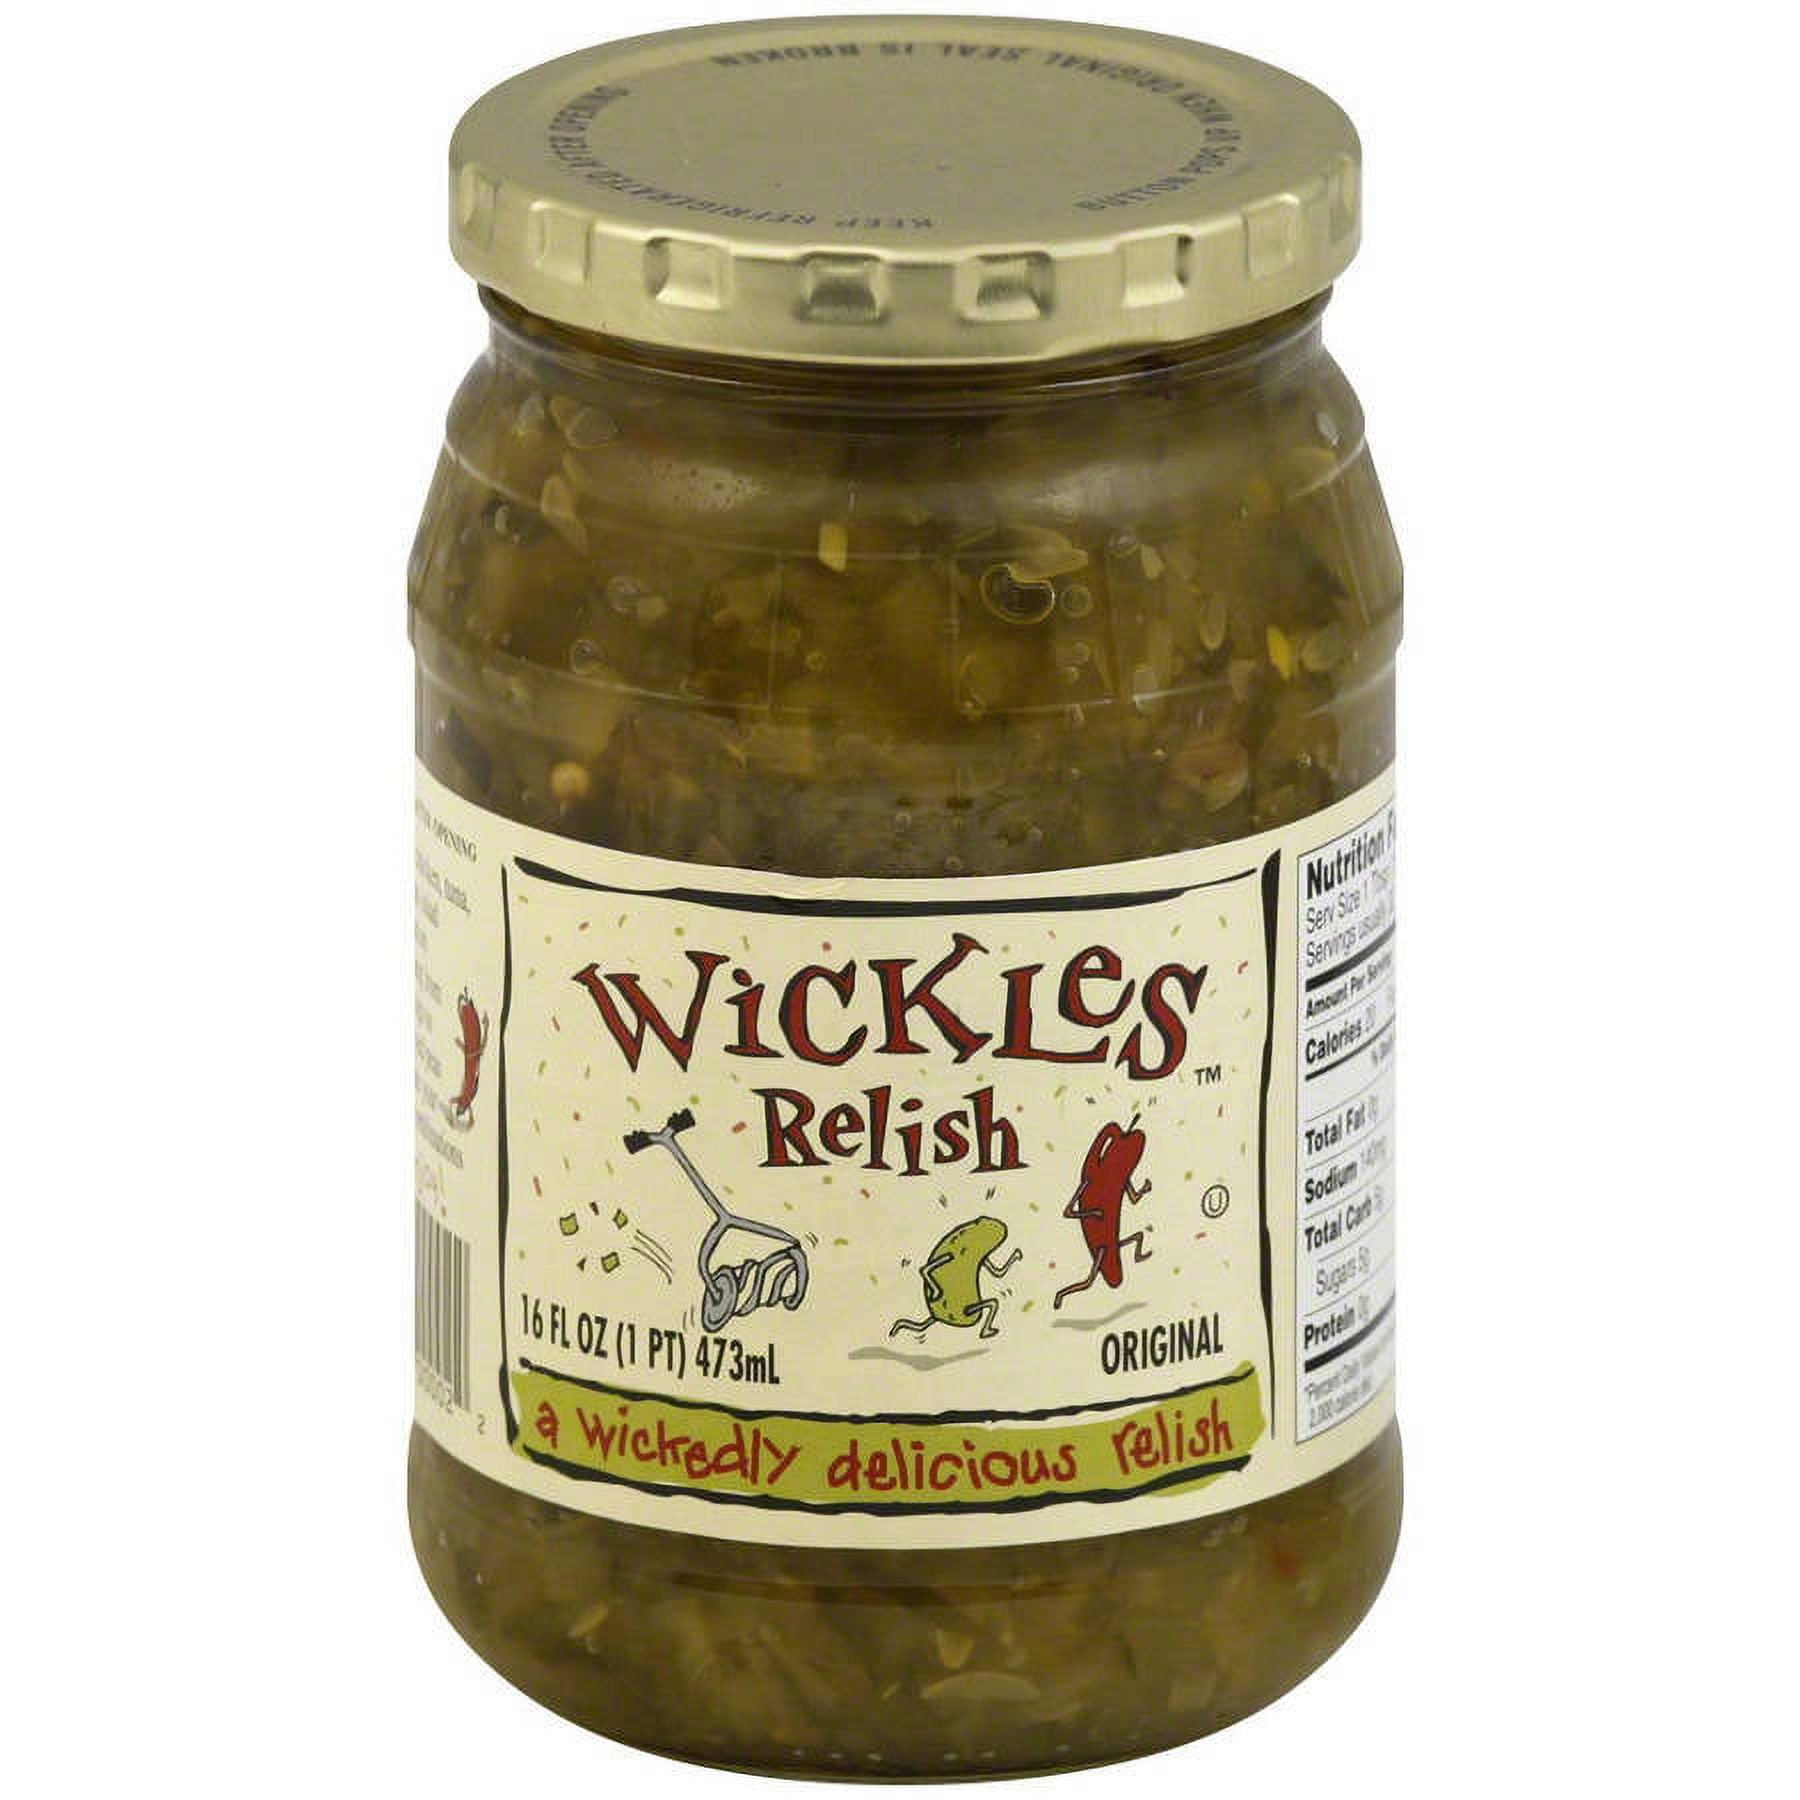 Wickles Original Relish, 16 fl oz